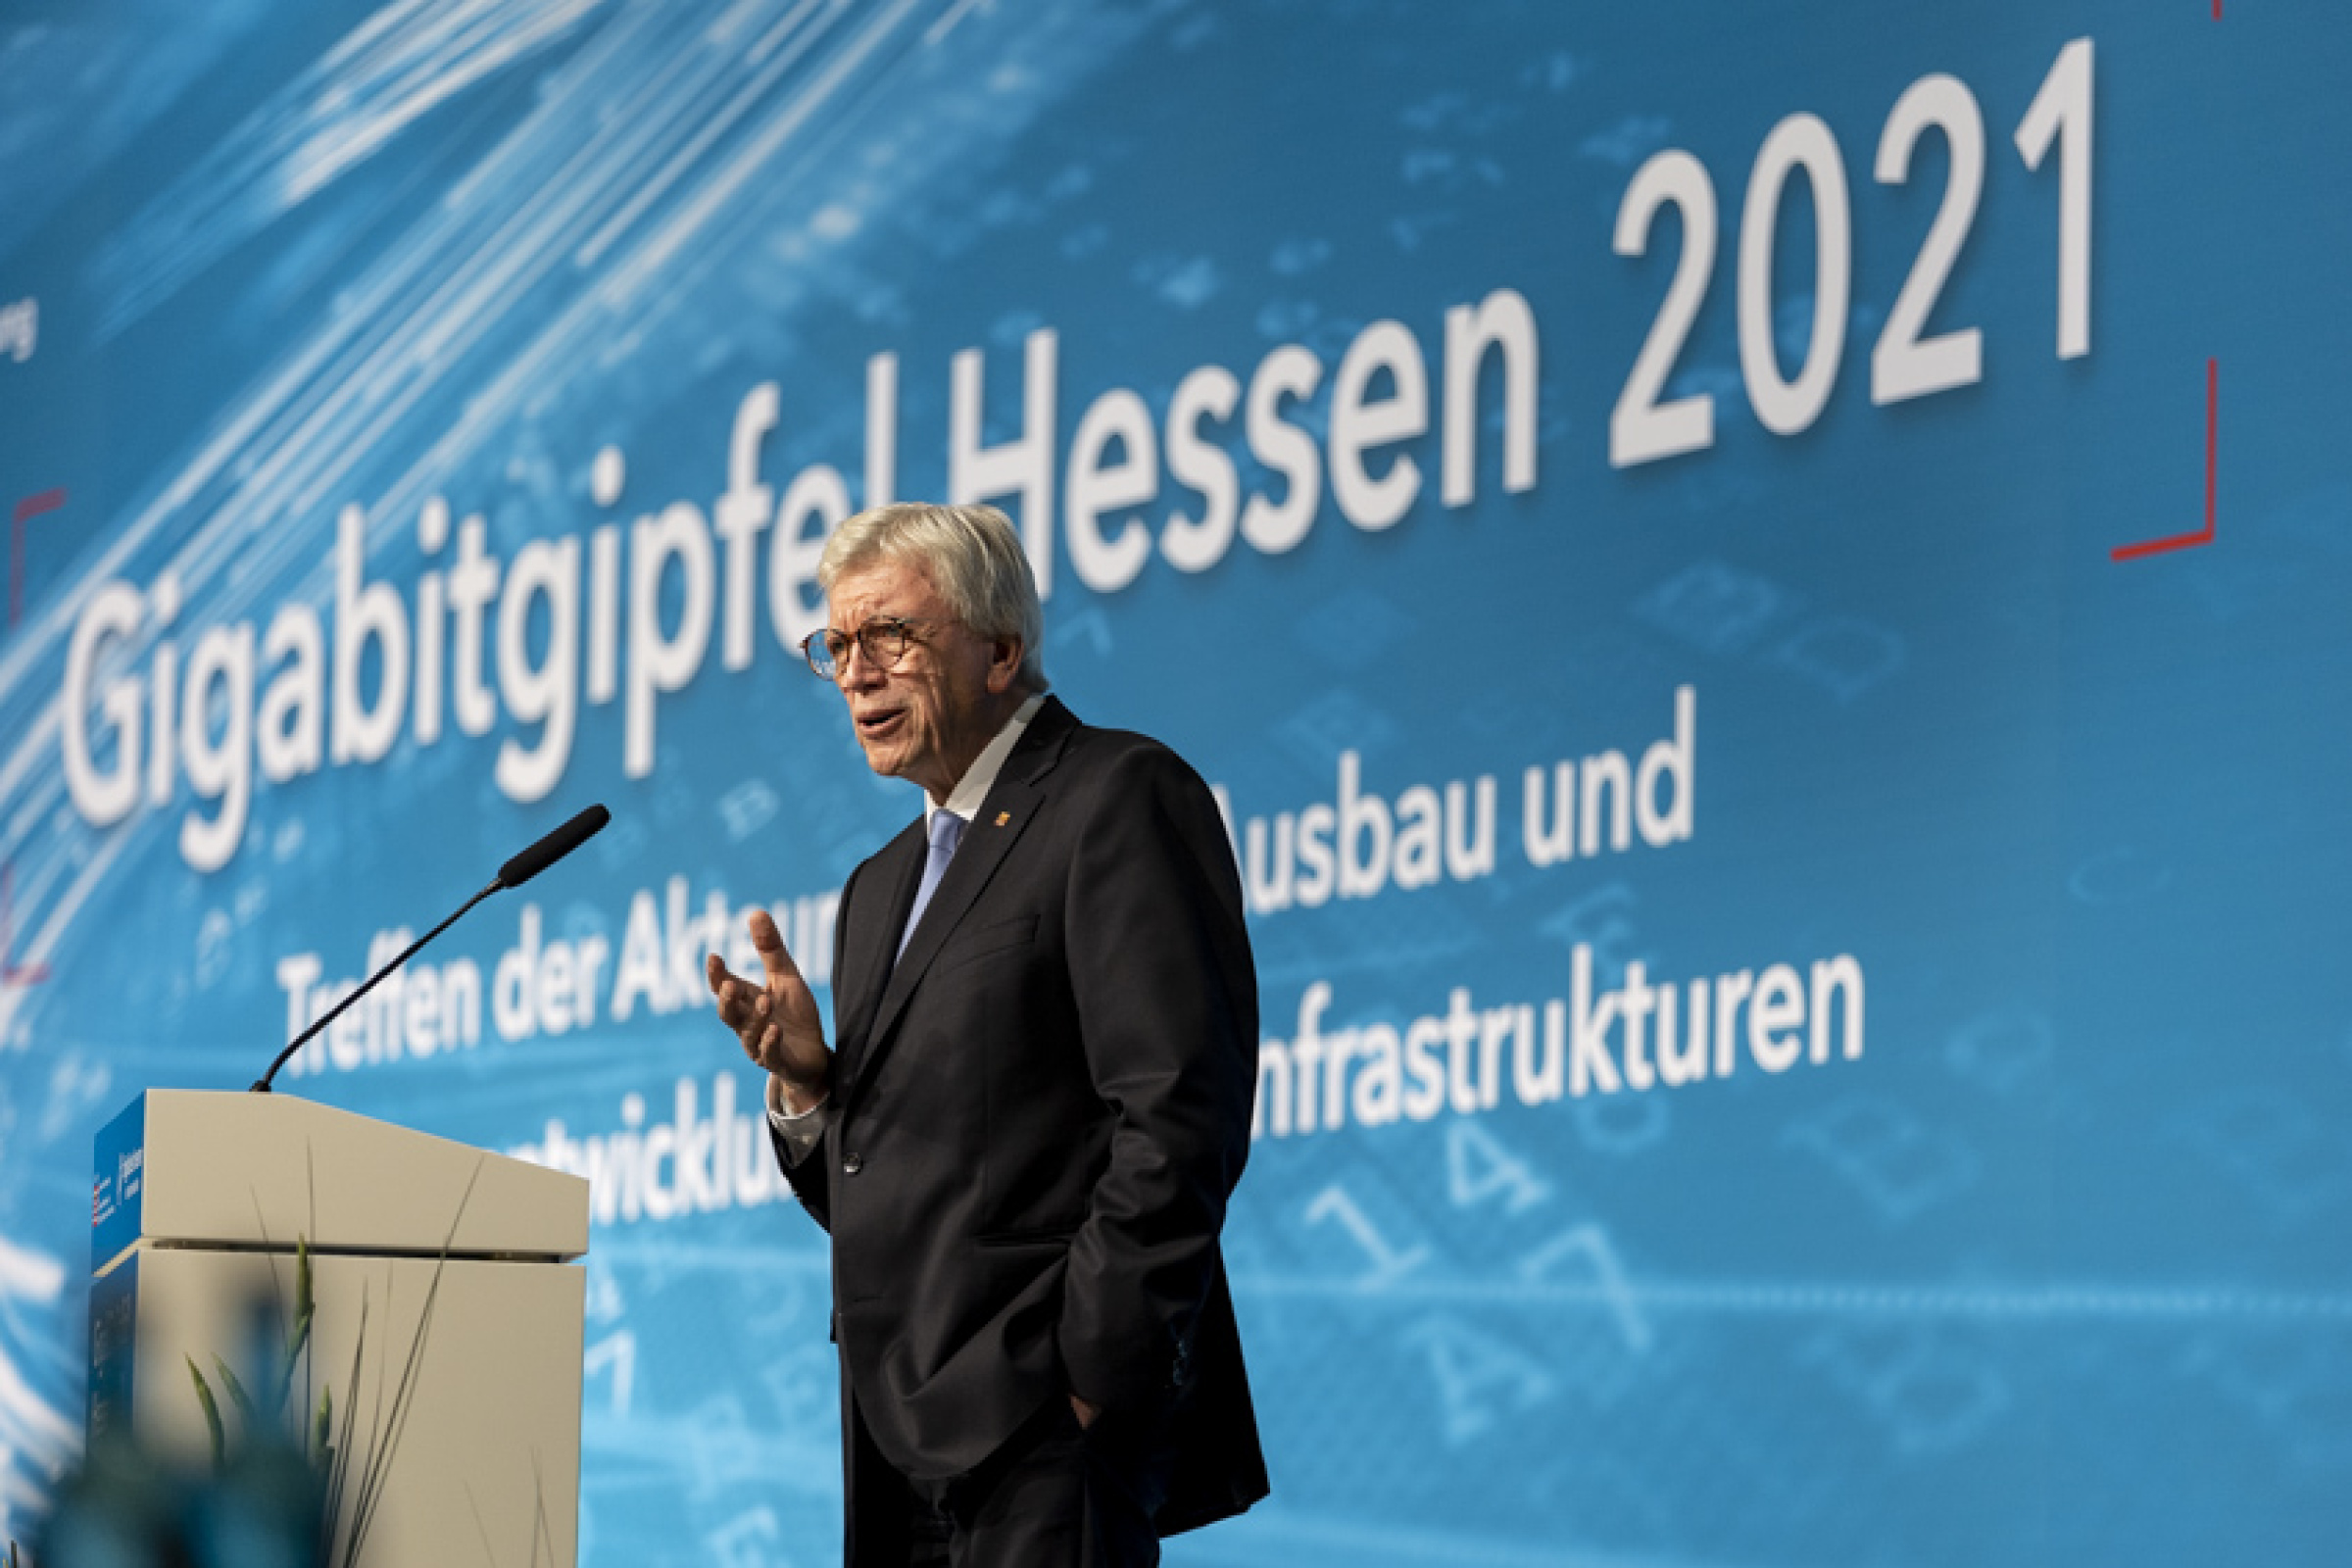 Der Hessische Ministerpräsident Volker Bouffier bei der Eröffnung des Gigabitgipfels Hessen 2021